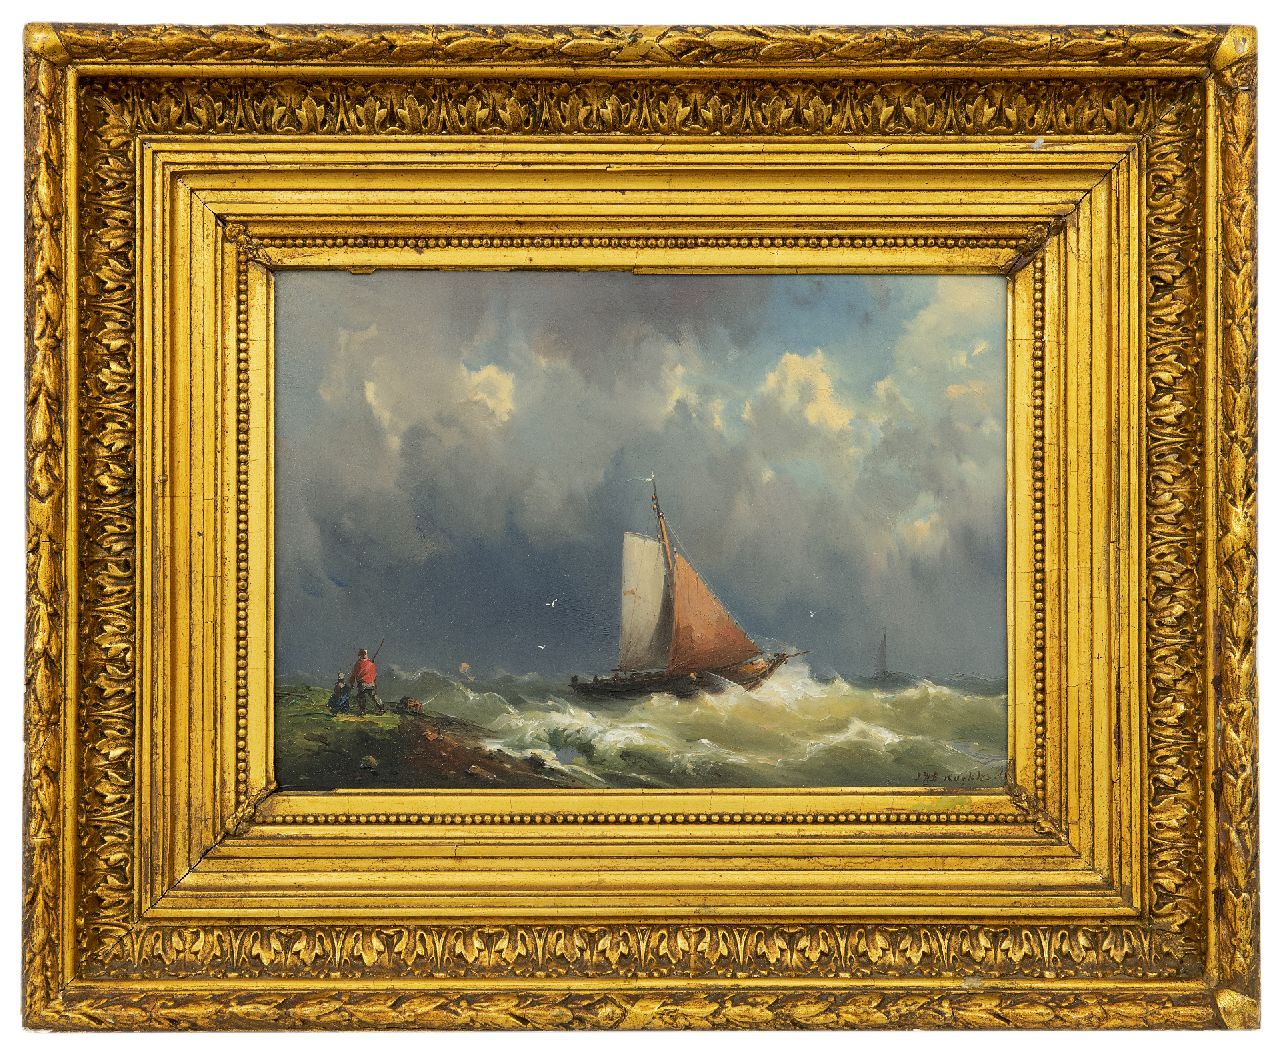 Koekkoek J.H.B.  | Johannes Hermanus Barend 'Jan H.B.' Koekkoek, Sailing ships on a choppy sea, oil on panel 23.1 x 32.7 cm, signed l.r.